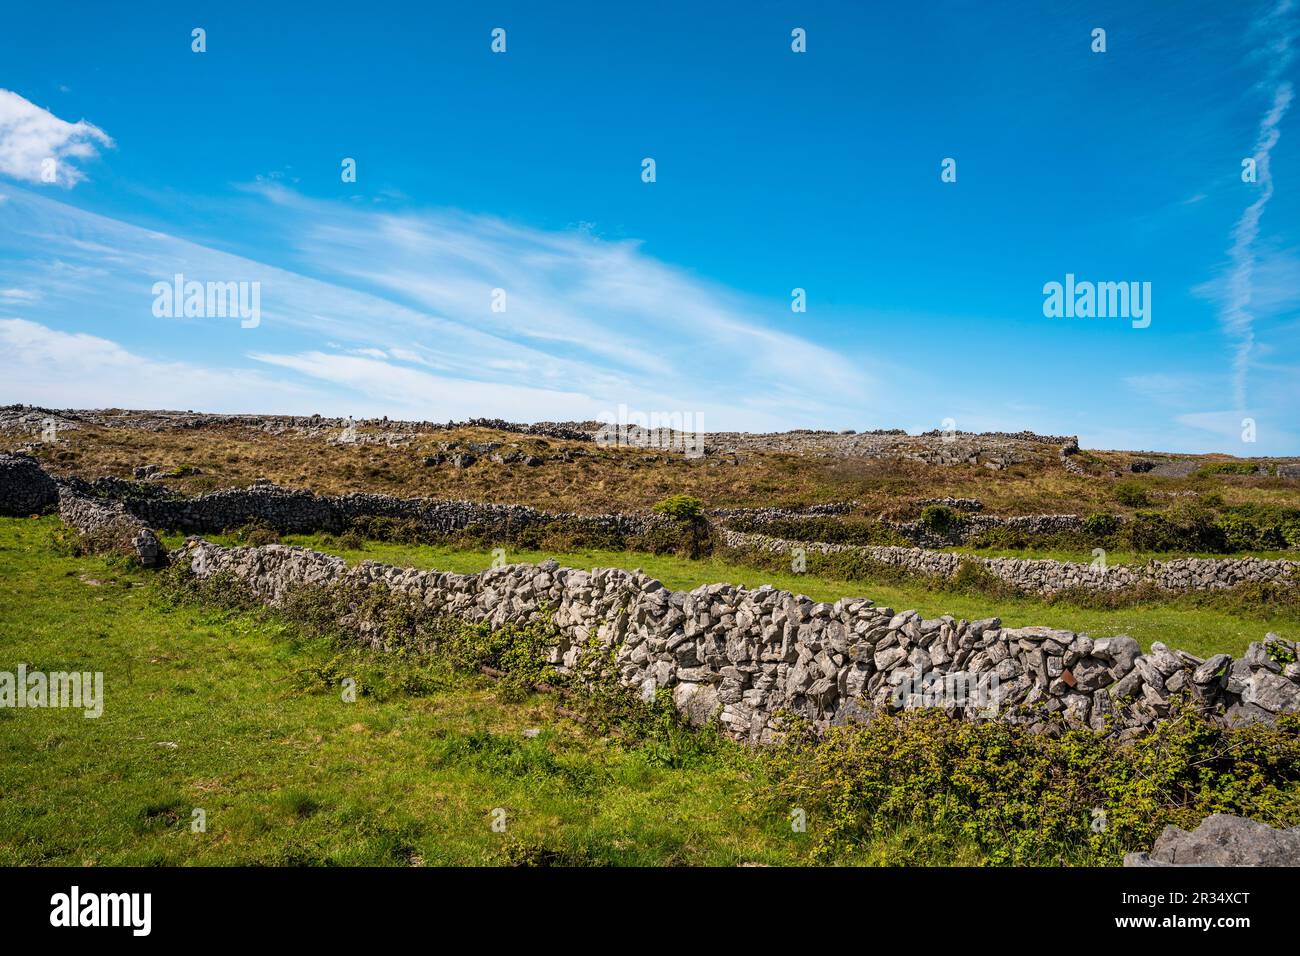 Paysage d'Inis Mór, ou Inishmore, la plus grande des îles d'Aran dans la baie de Galway, au large de la côte ouest de l'Irlande, avec des murs en pierre. Banque D'Images